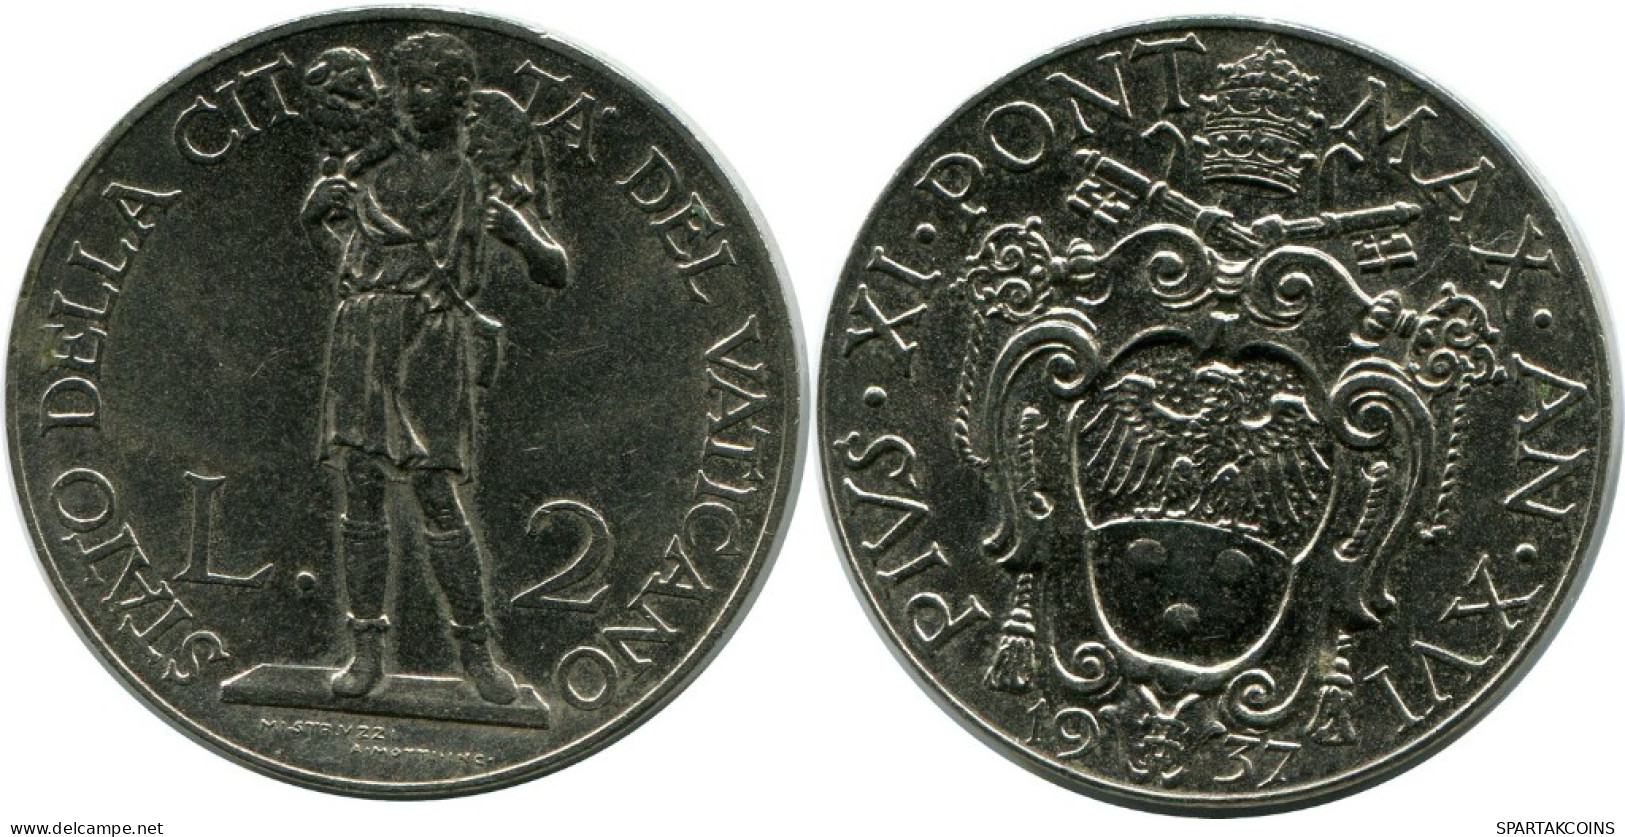 2 LIRE 1937 VATICAN Coin Pius XI (1922-1939) #AH300.16.U.A - Vaticano